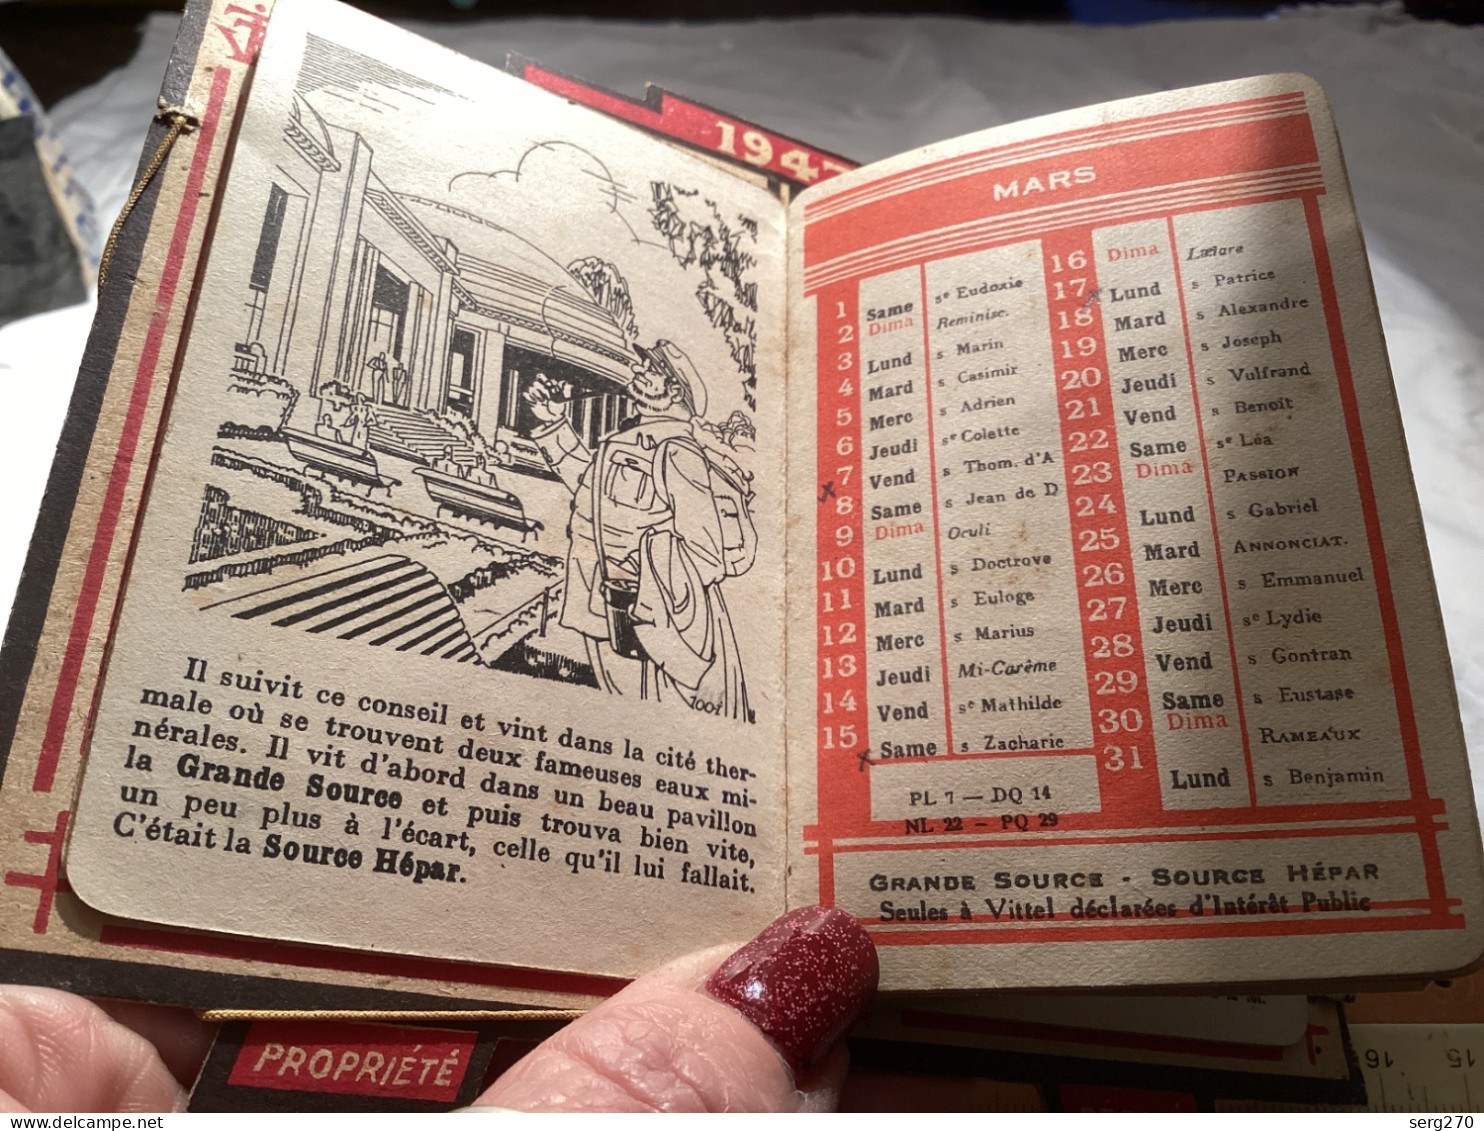 Publicité Vittel sur carton avec ferraille au milieu 1947, calendrier, publicité, Vittel Vittel calendrier